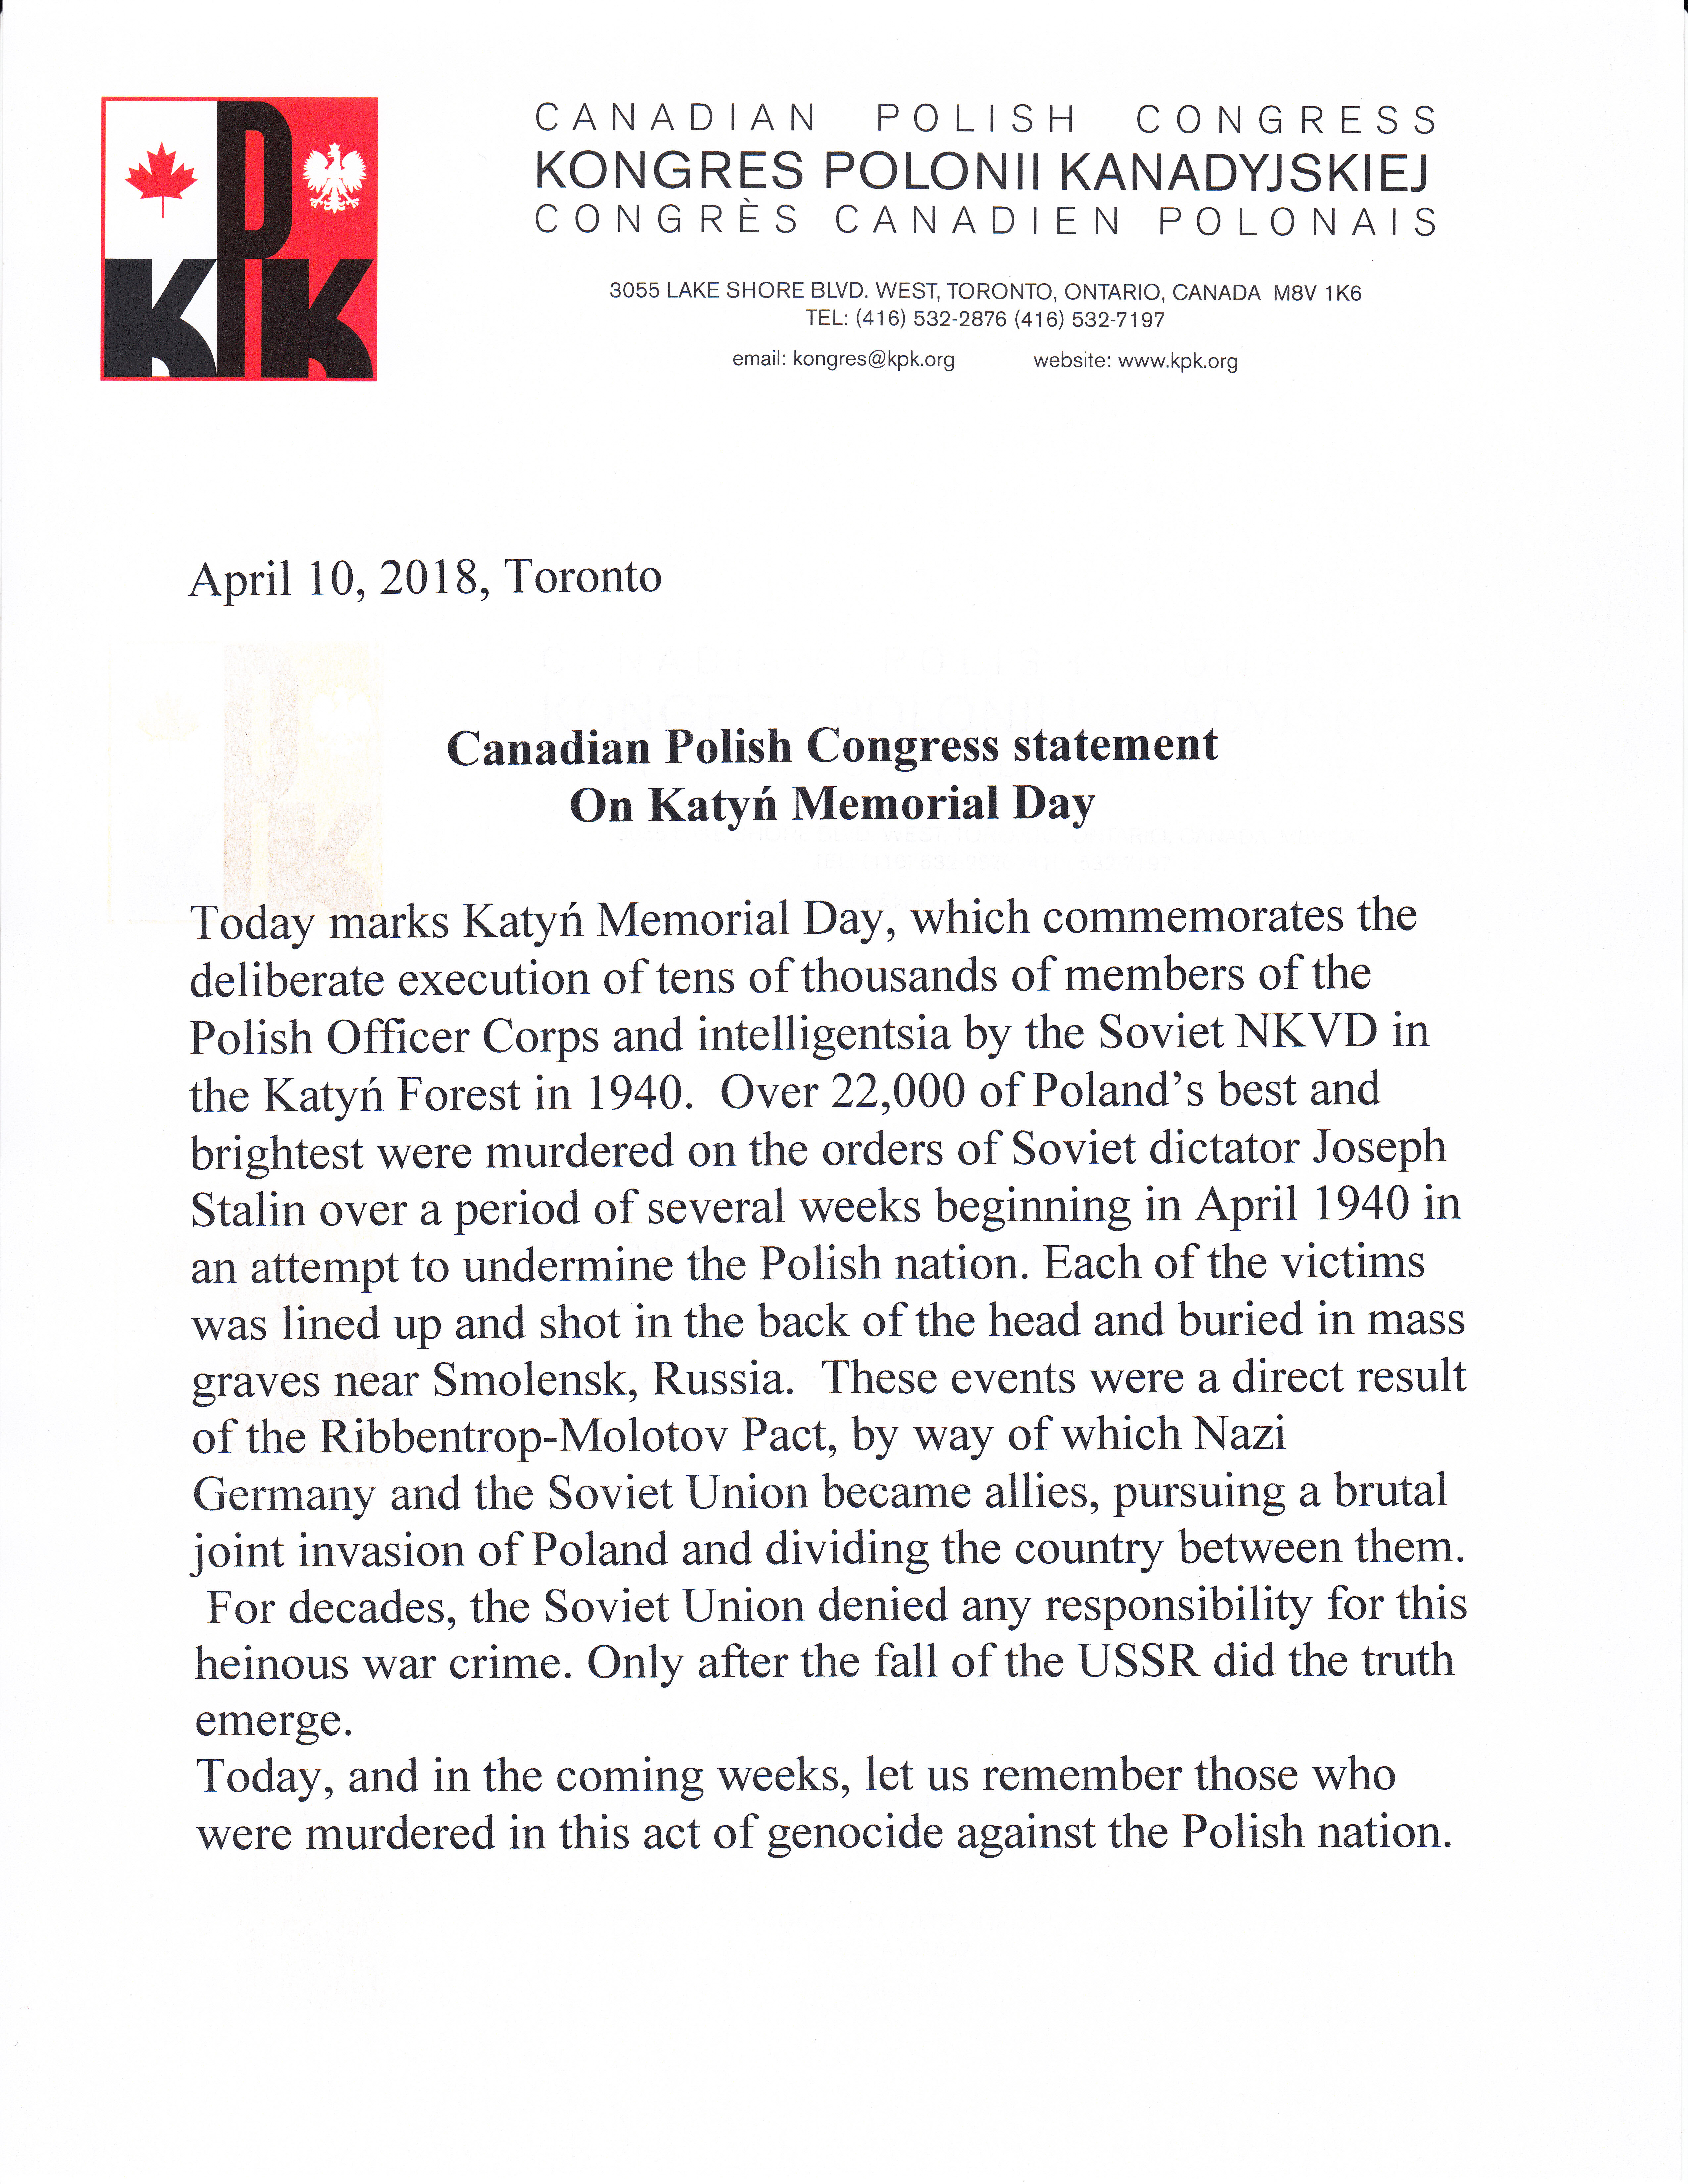 CPC Katyn Statement